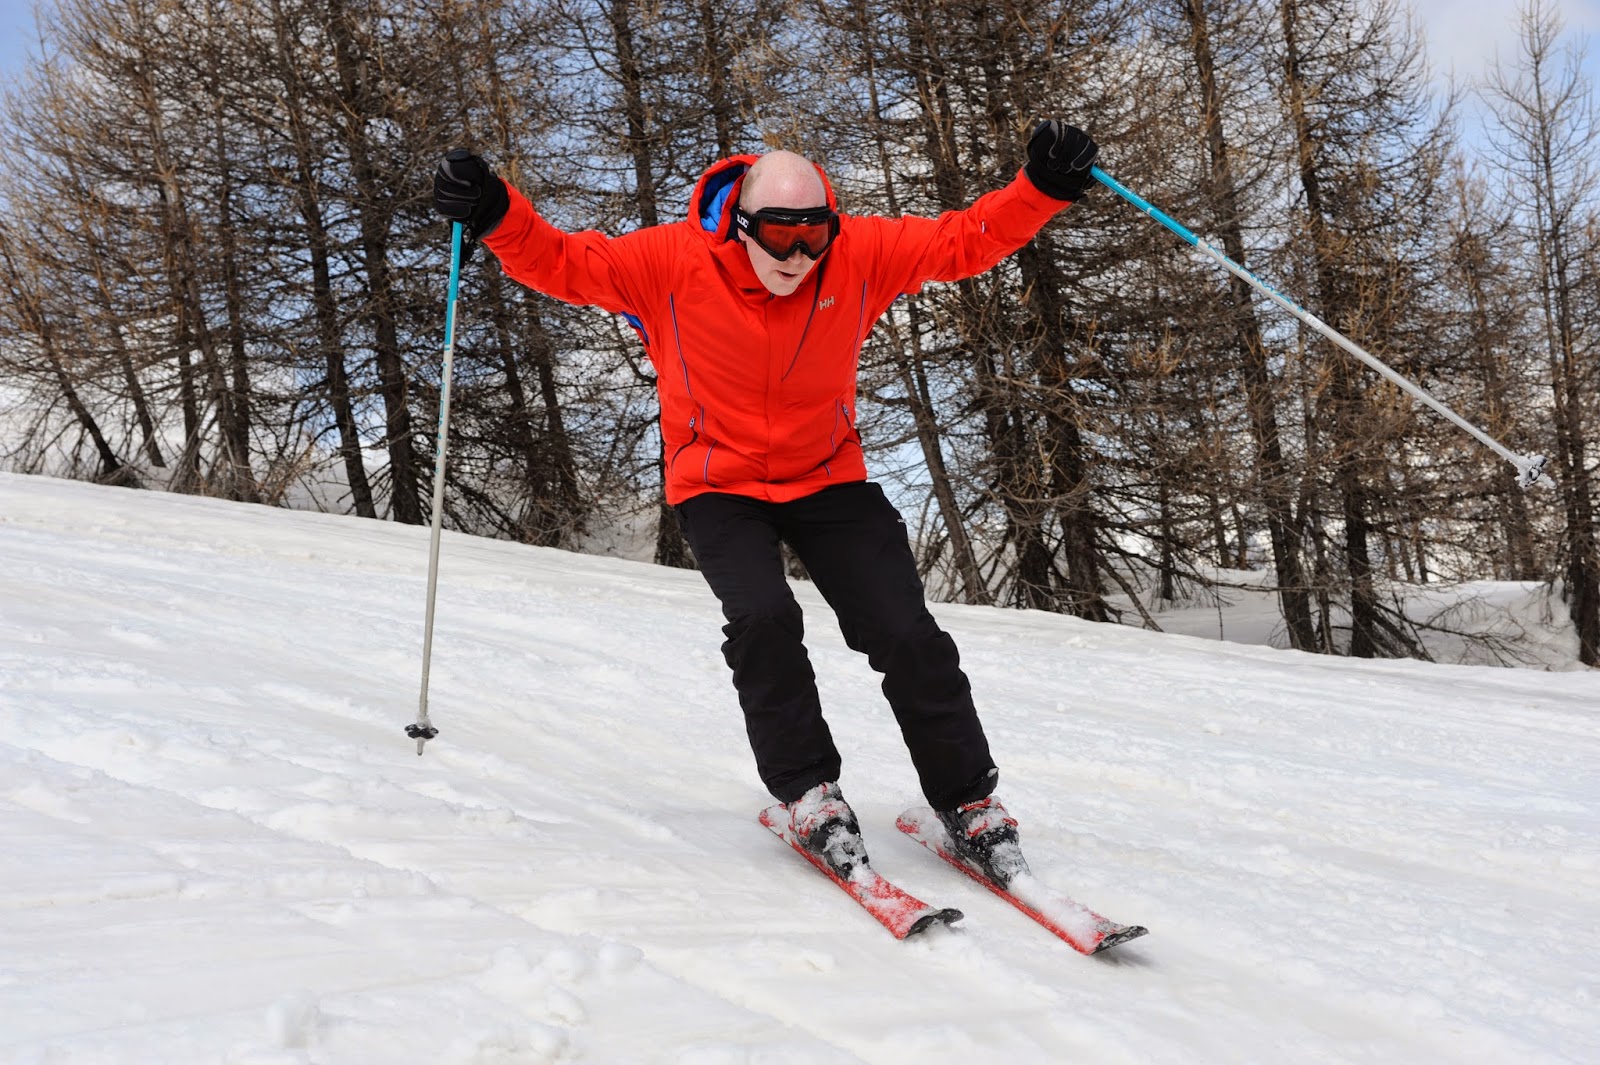 Family ski holiday, snowbizz ski holiday